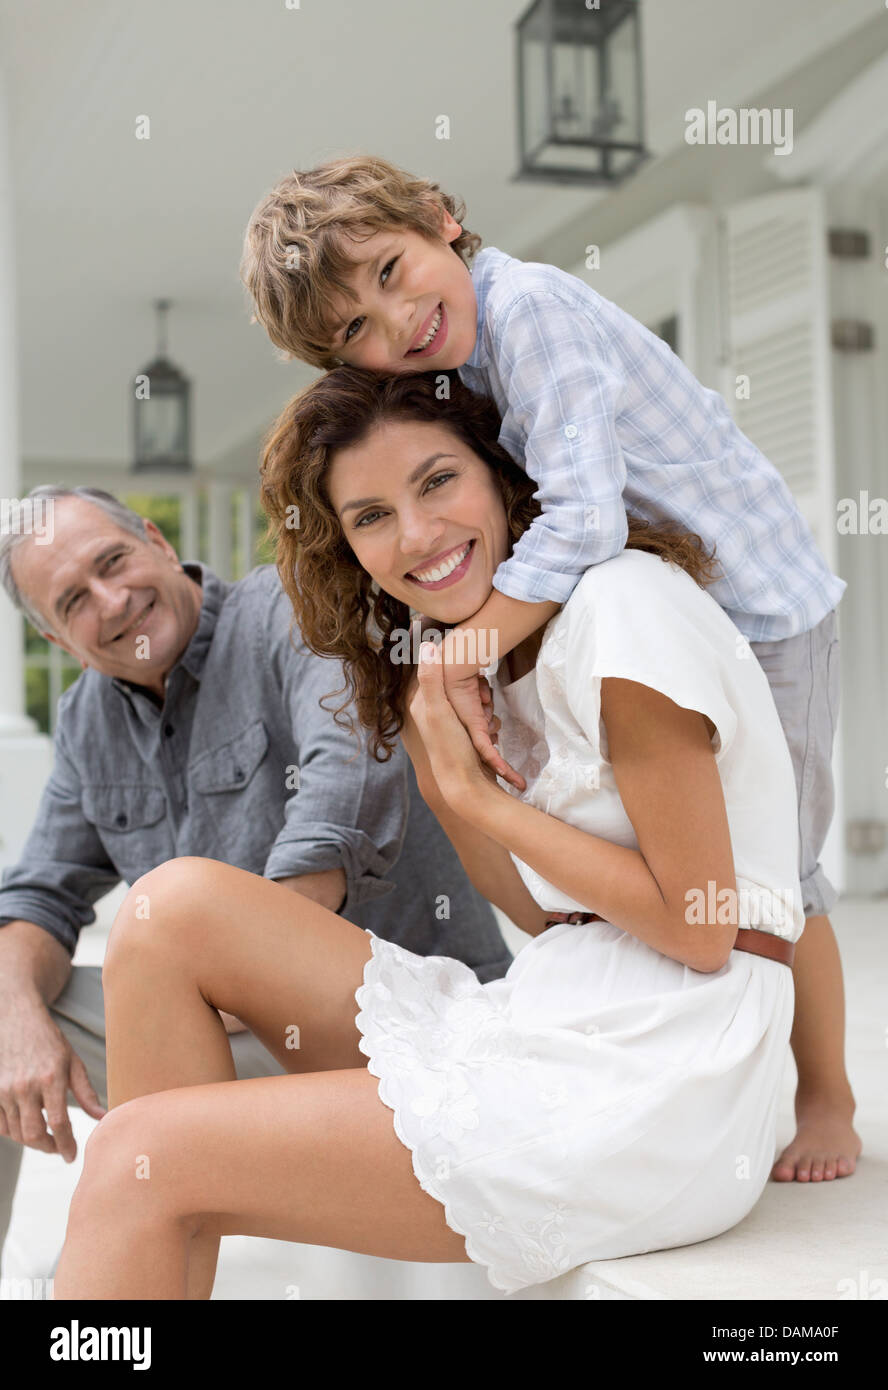 Mutter und Sohn lächelnd auf Veranda Stockfoto